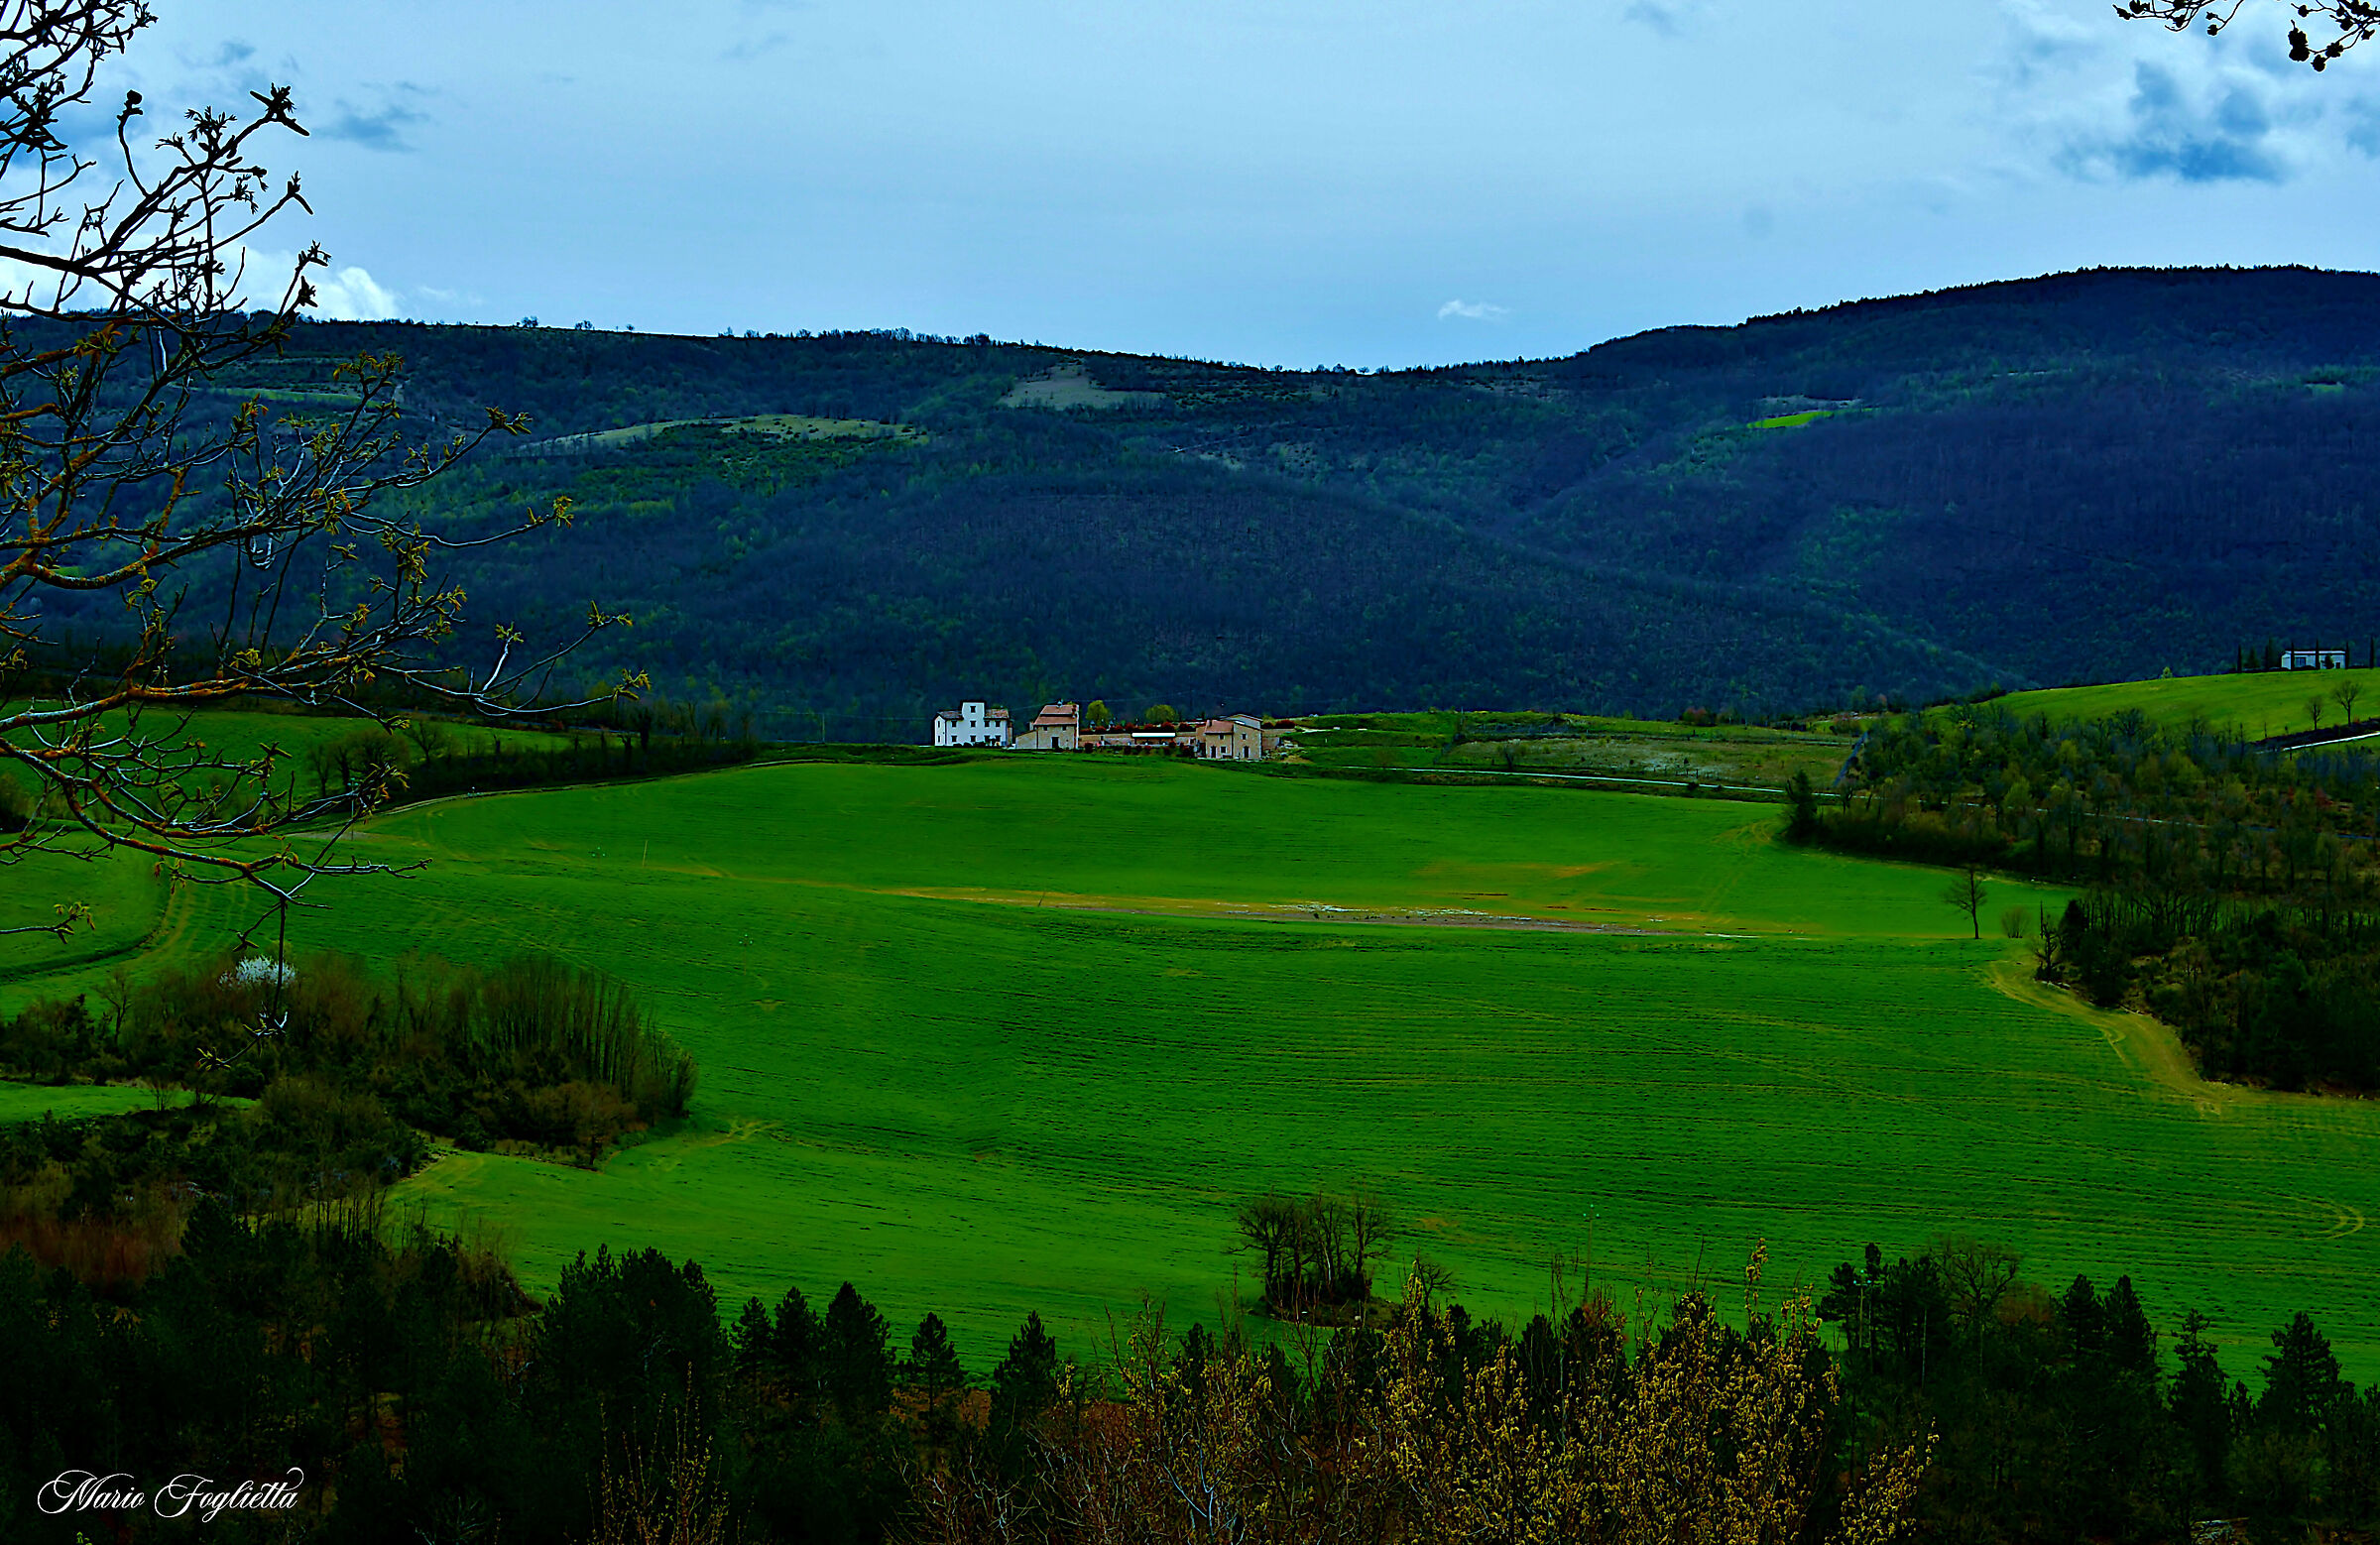 Umbrian Landscapes...